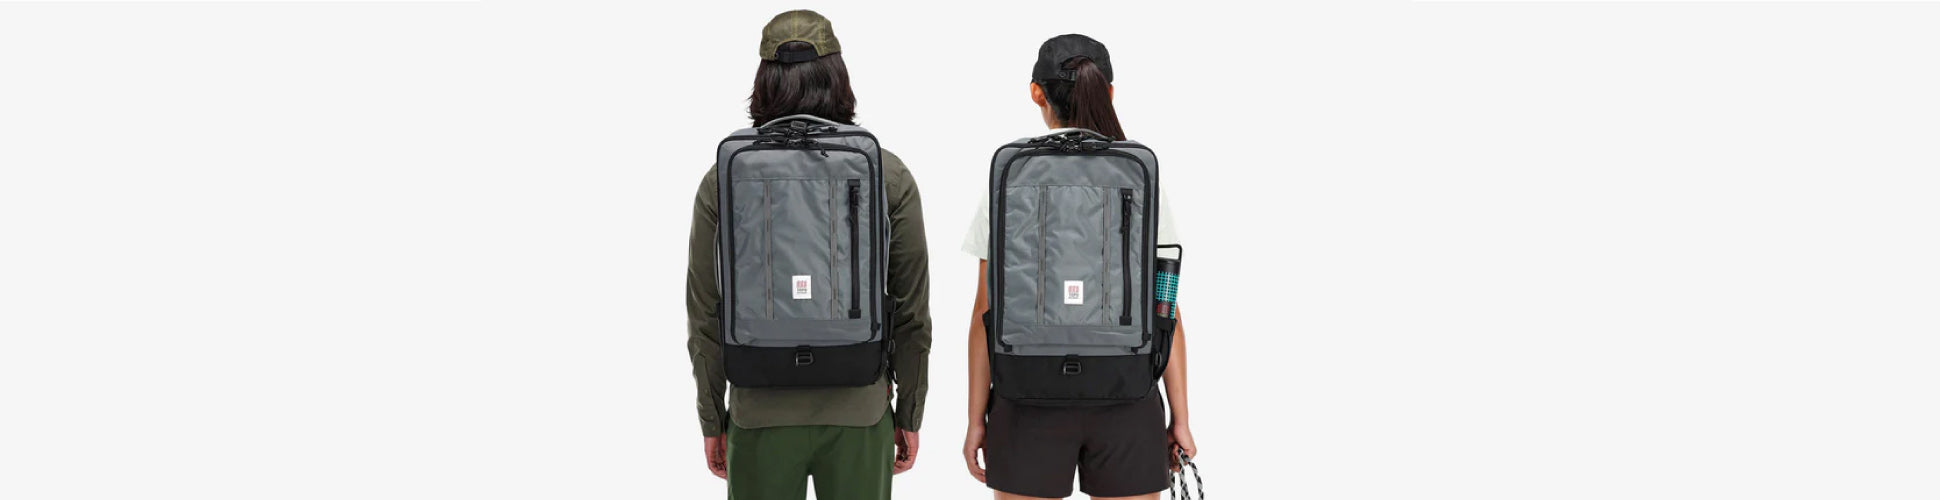 Rygsække tilbehør rejsetasker Topo Designs